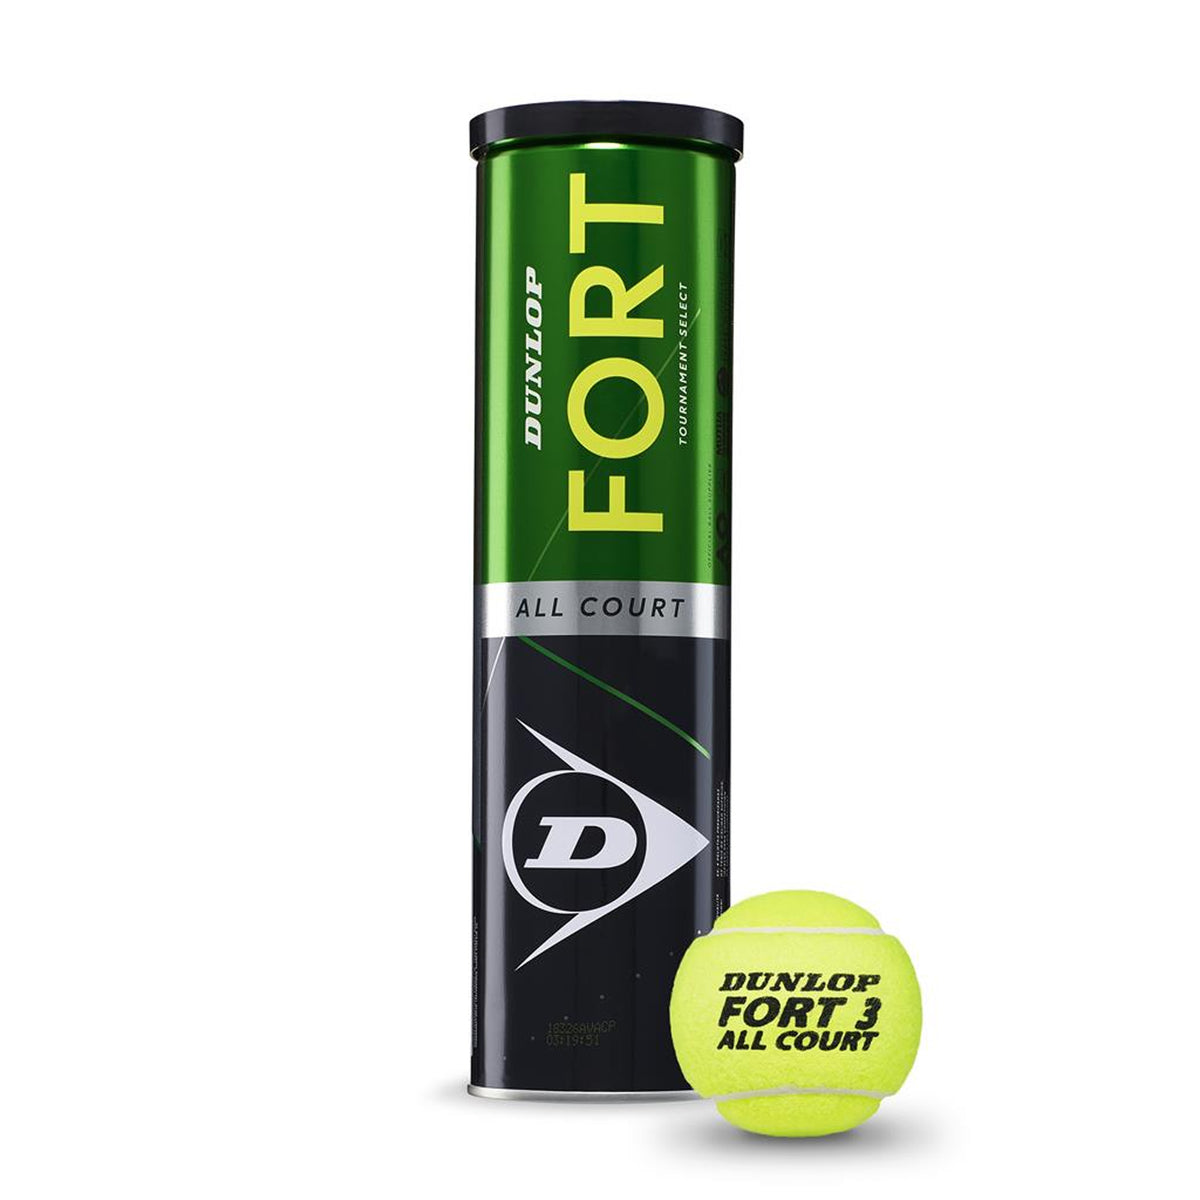 Dunlop Fort All Court Tennis Ball - 4 Ball Can